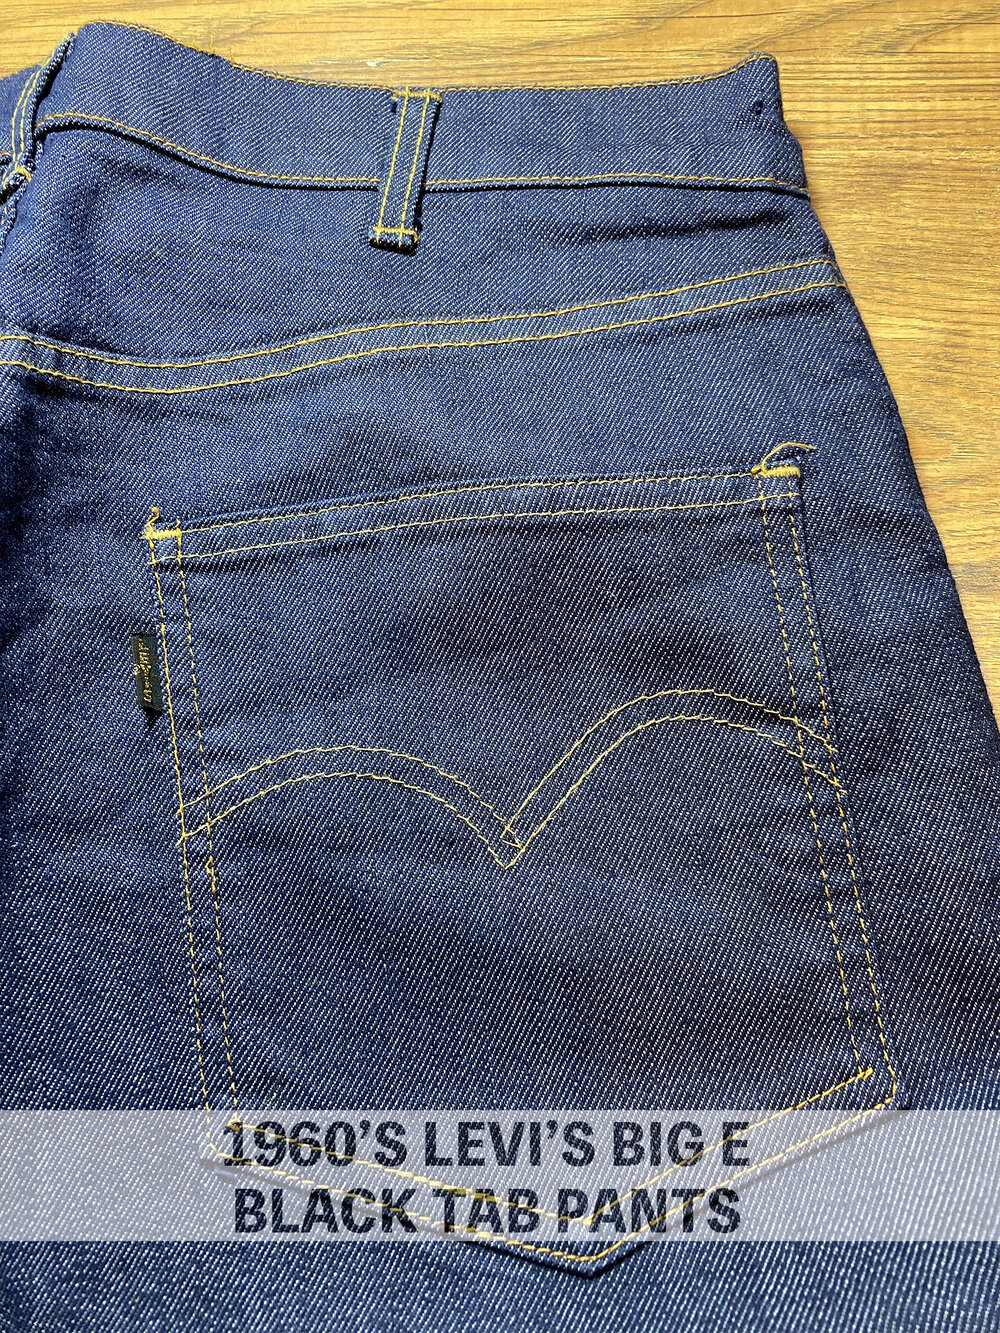 1960's Vintage Levi's Big E Black Tab Pants — Slash Denim